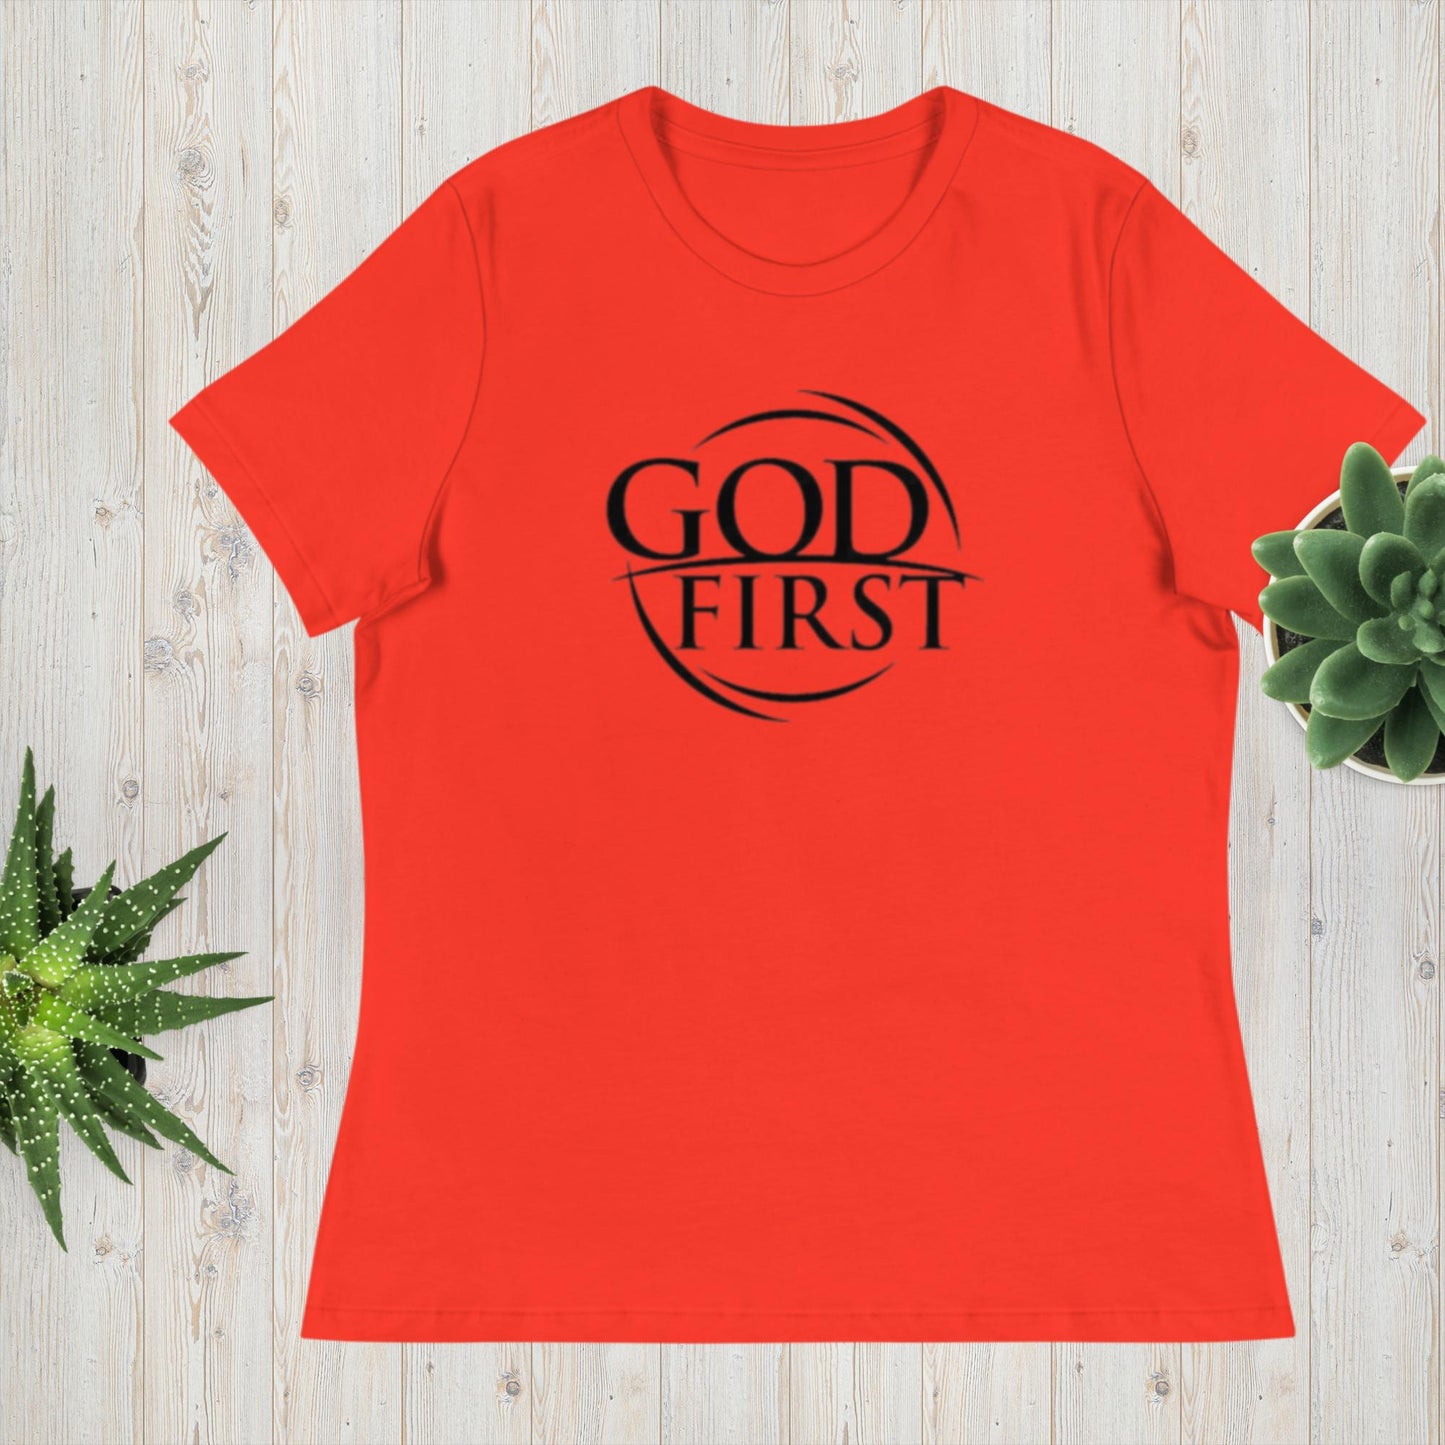 GOD First - Women's tee